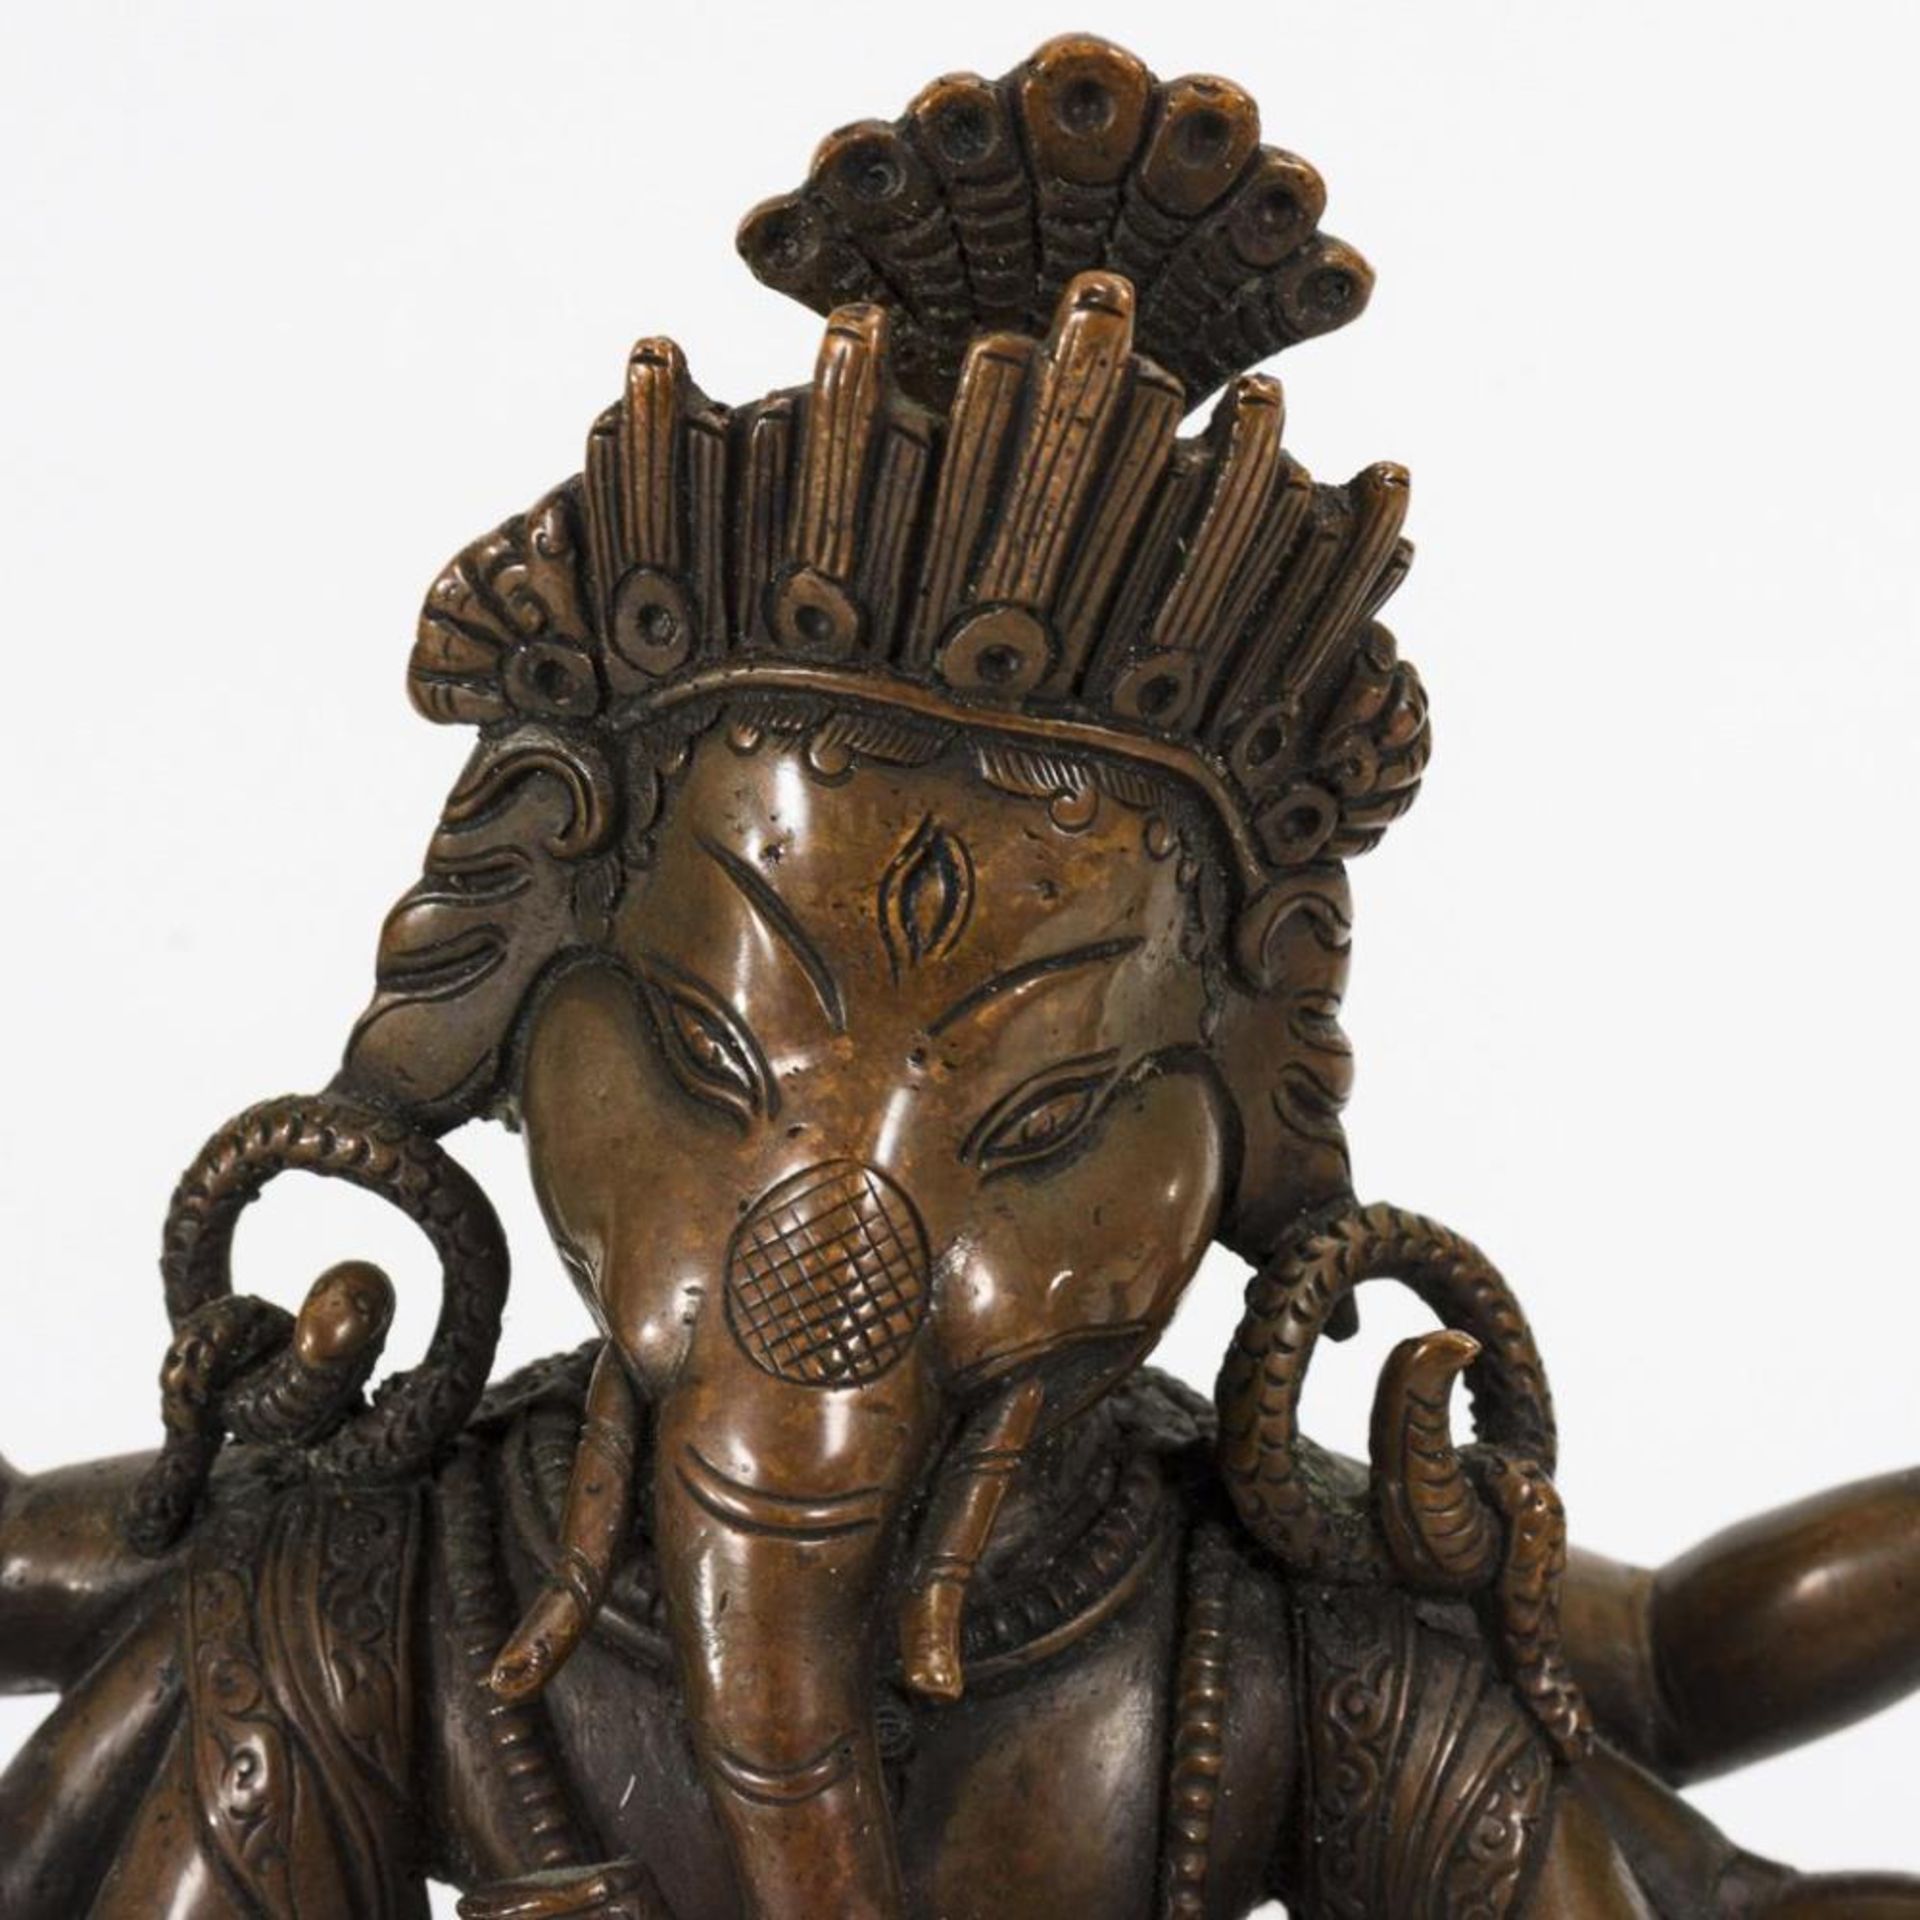 Ganesha auf der Ratte stehend - Bild 2 aus 7